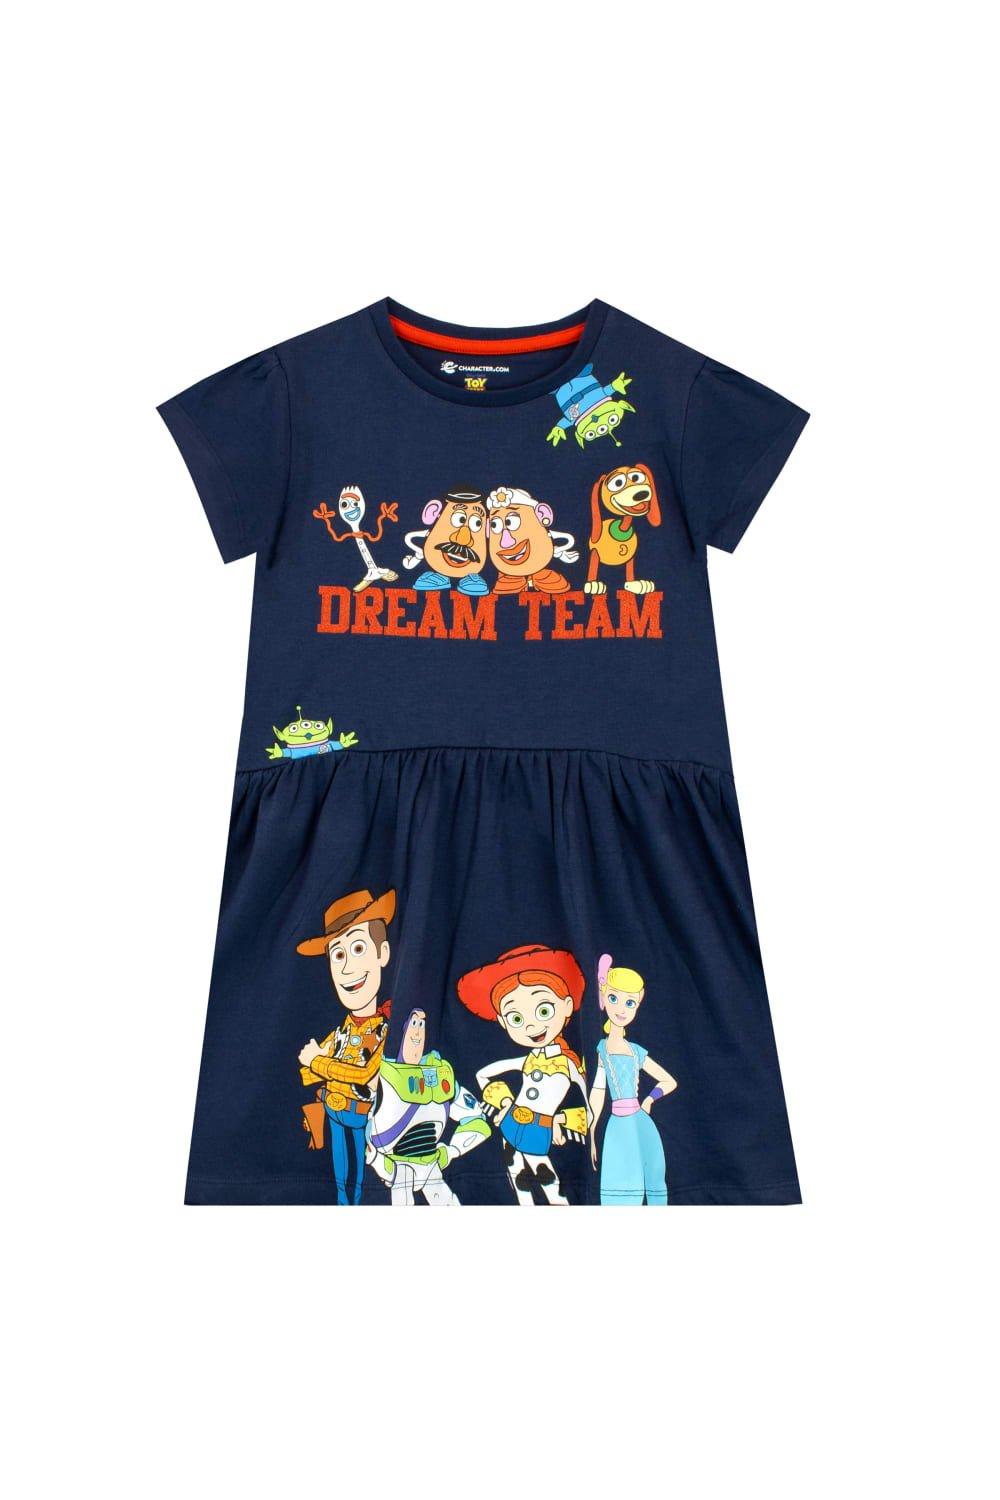 Toy Story Dream Team Woody Jessie Buzz And Friends Dress